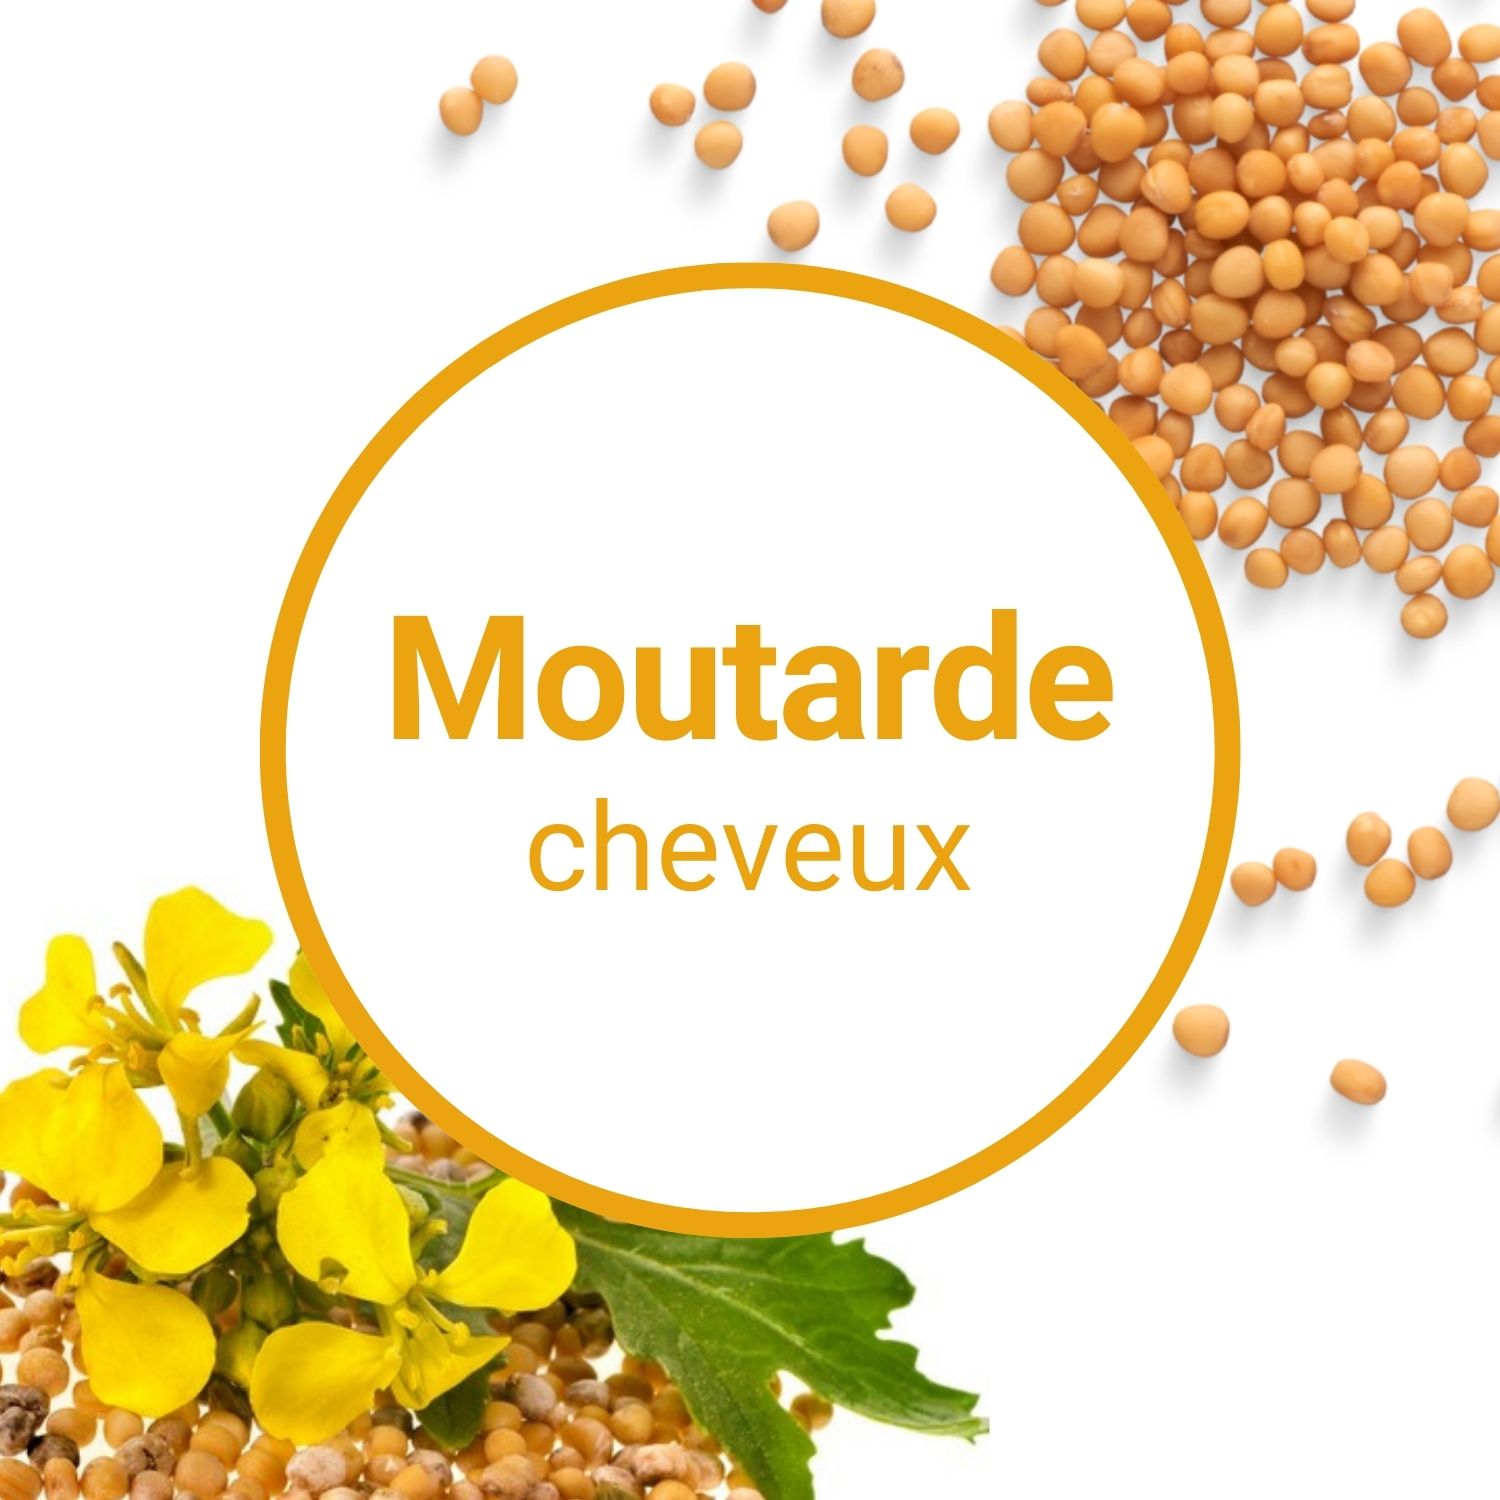 Quels sont les bienfaits de l'huile de Moutarde pour les cheveux ?